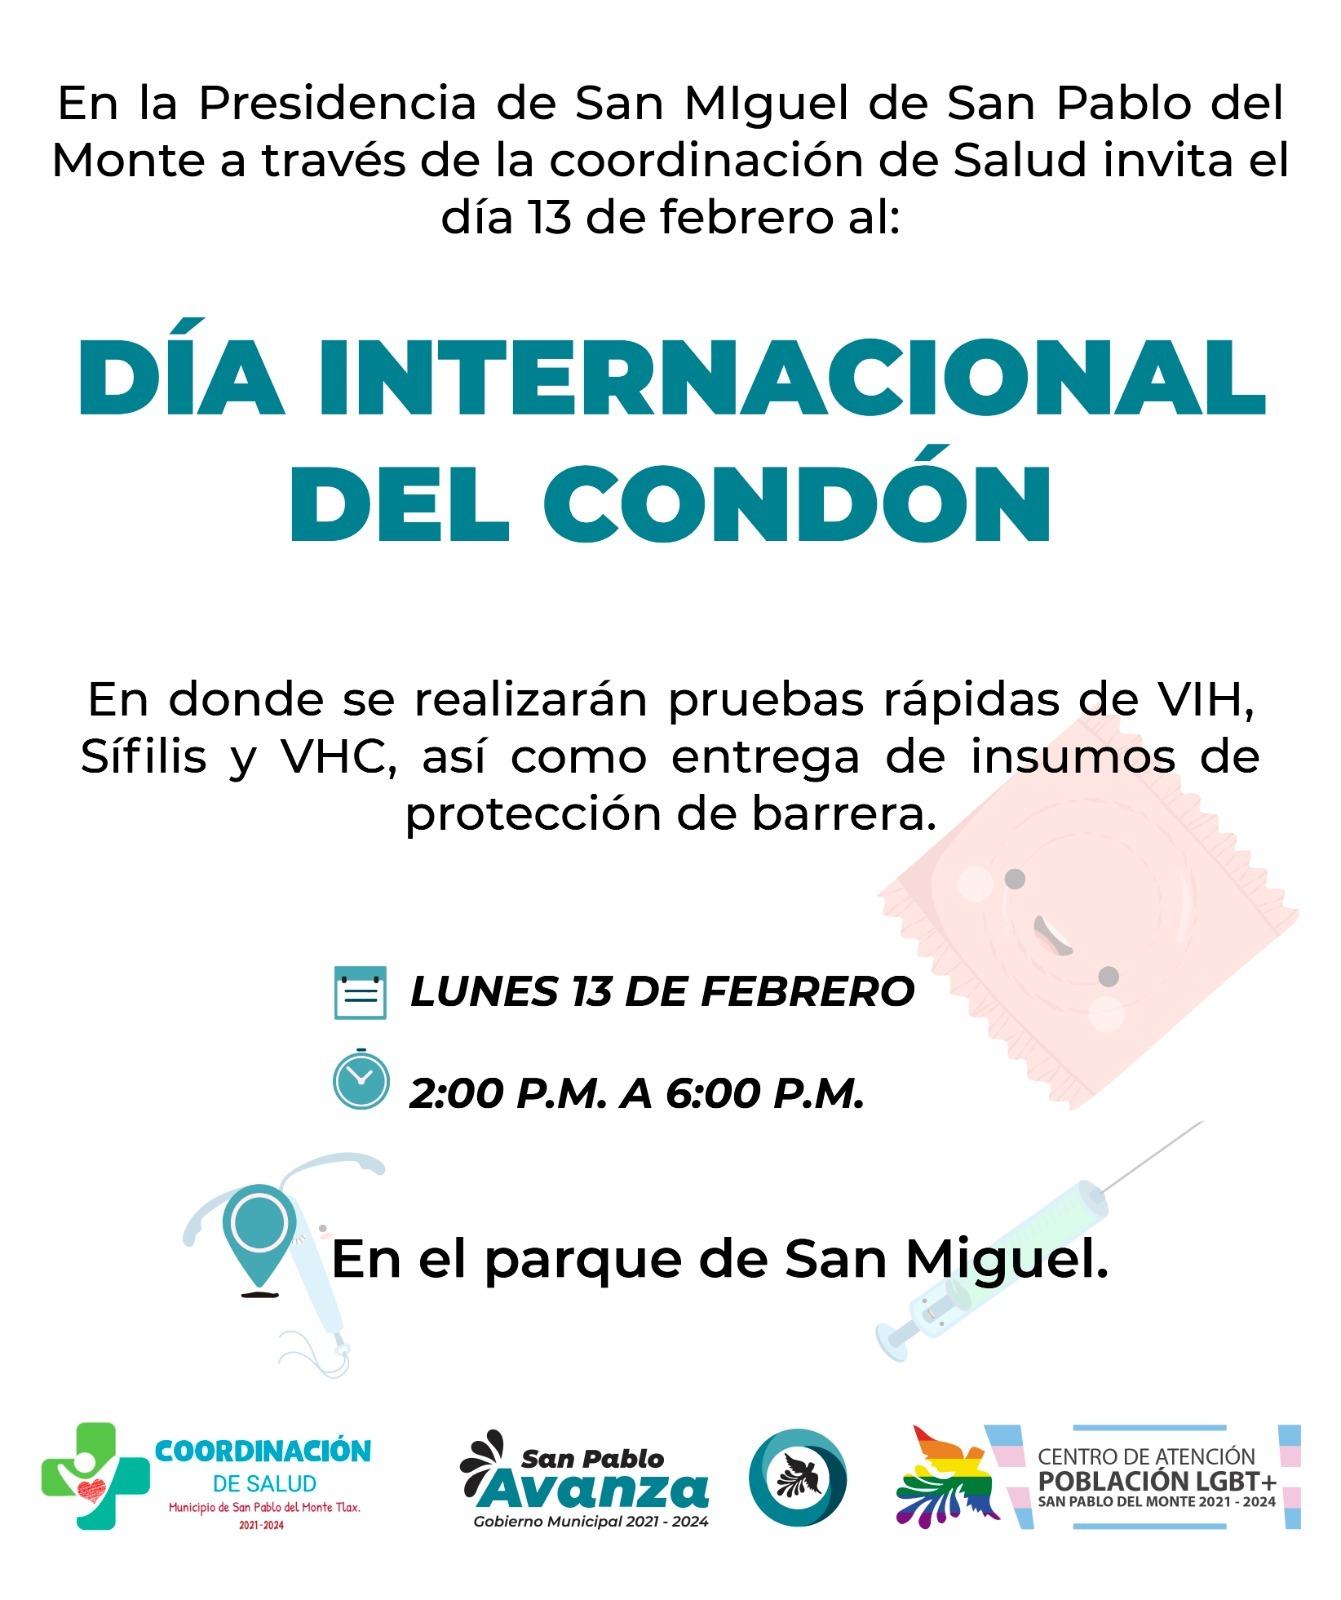 Invitan al Día Internacional del Condón en San Pablo del Monte 